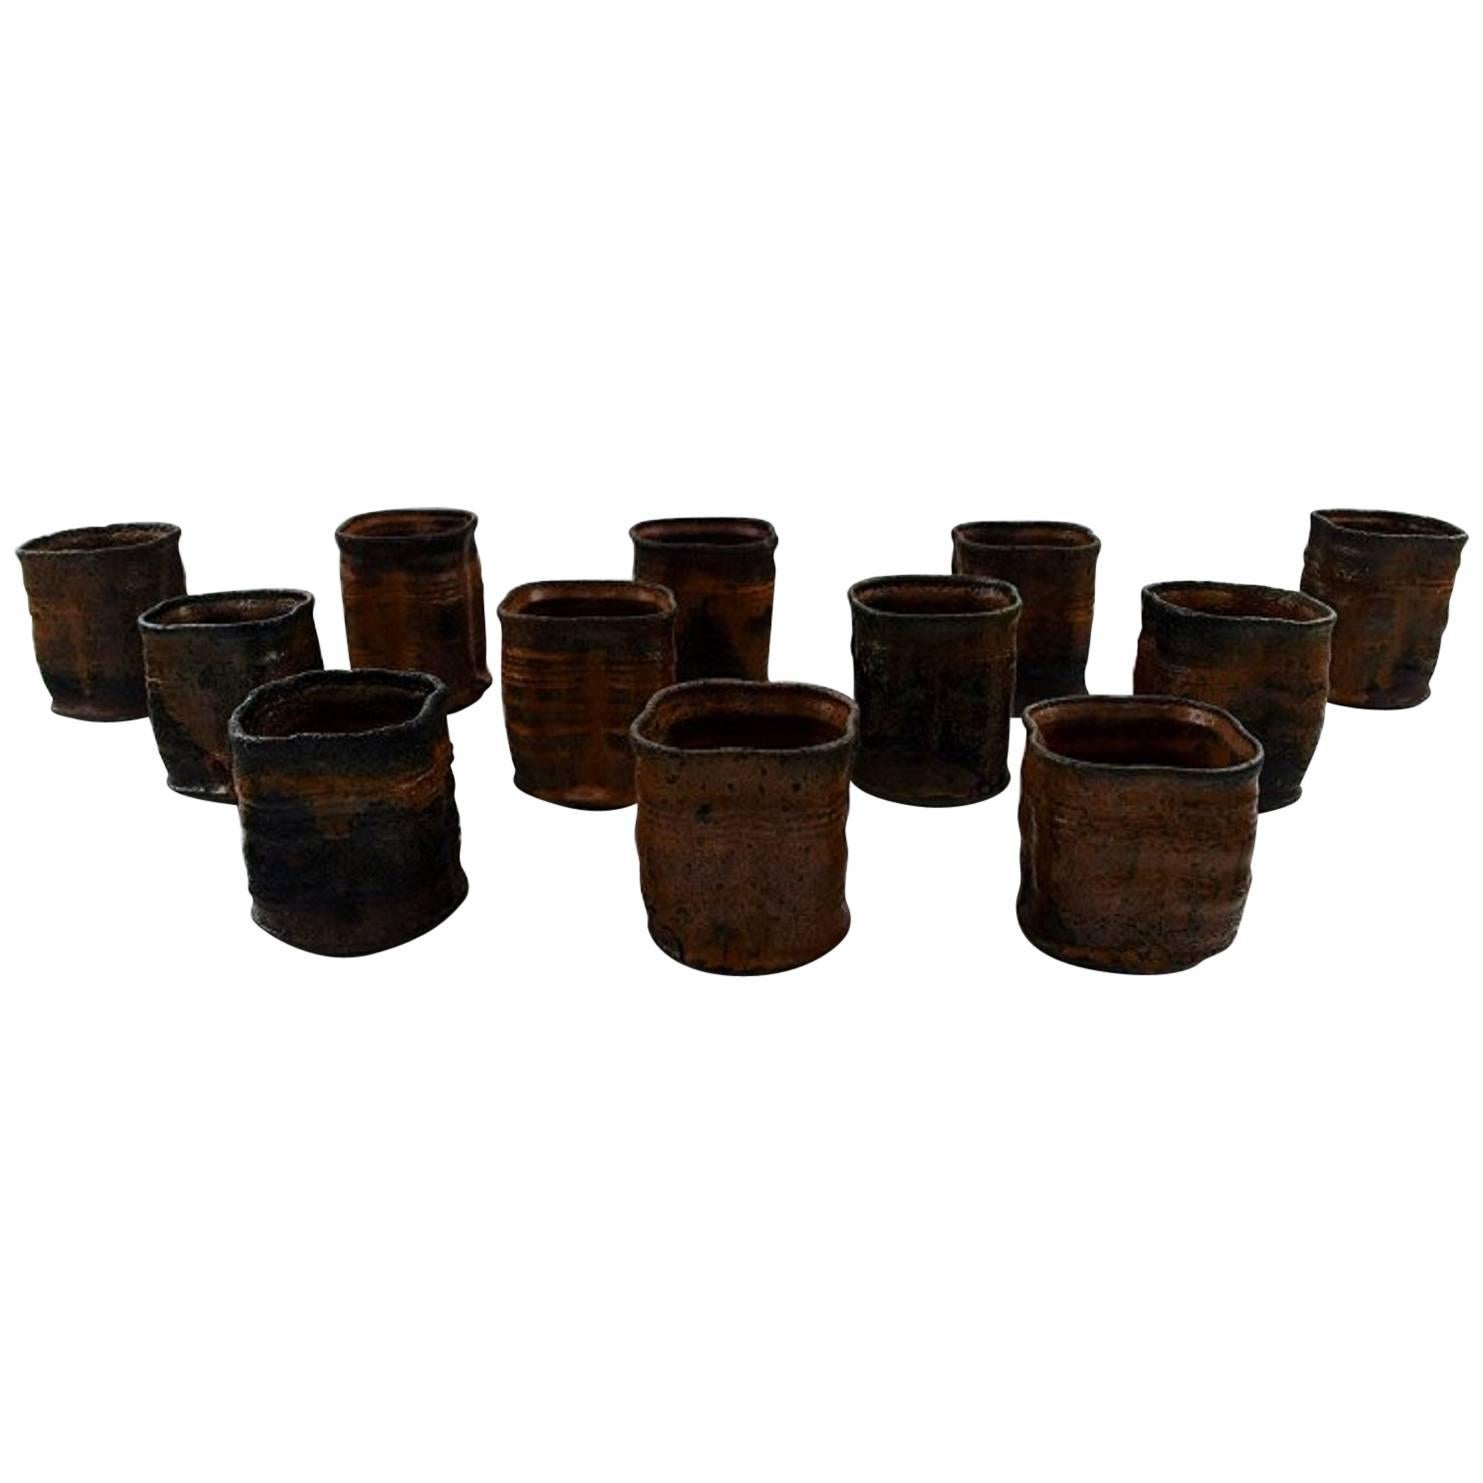 Gutte Eriksen, Own Workshop, 12 Ceramic Cups, 1950s